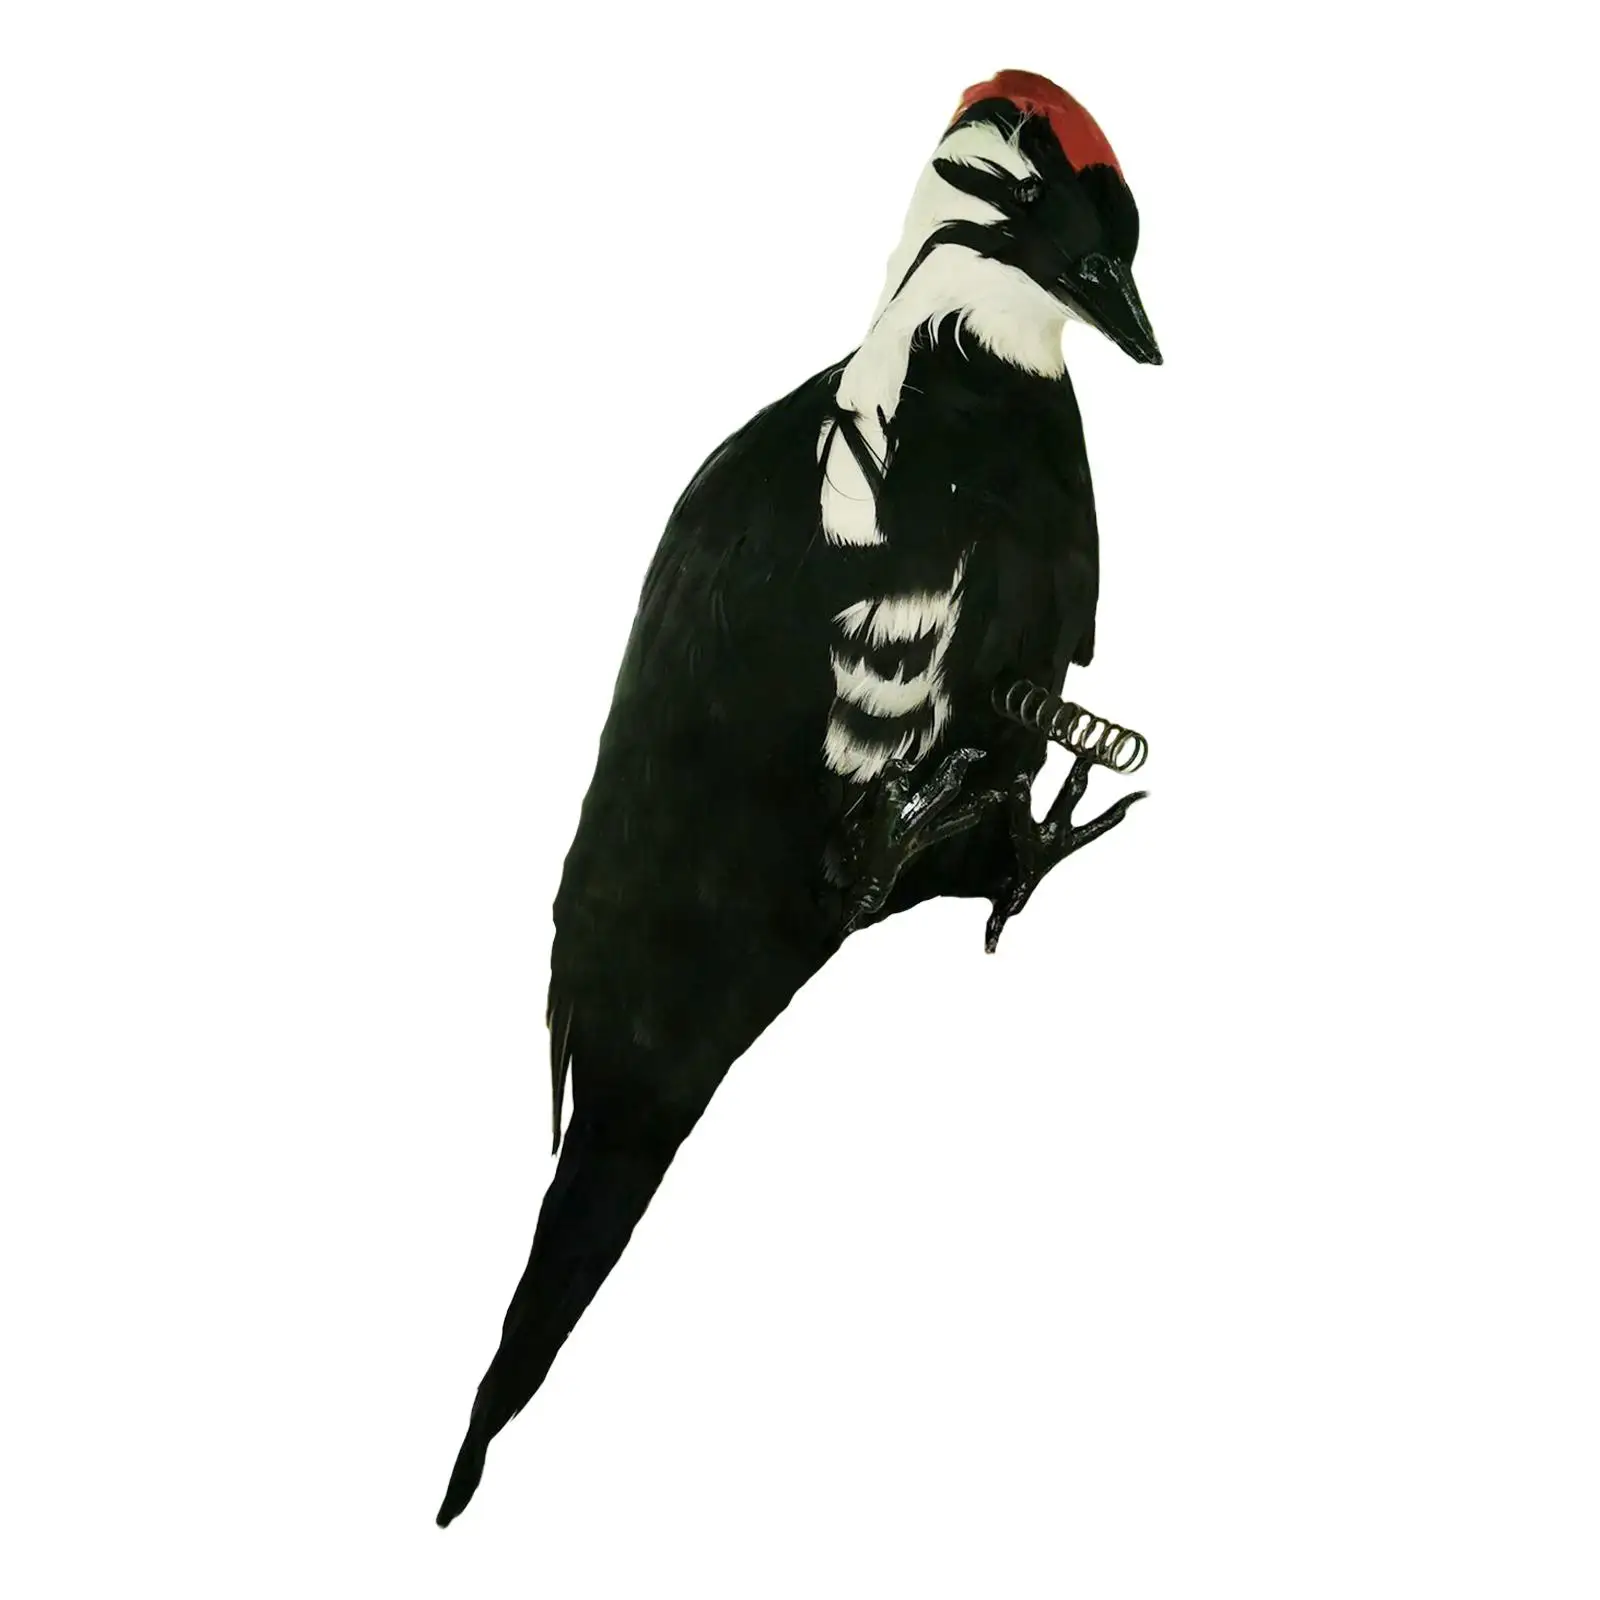 Eftirlíking Woodpecker leikföng fuglafjöðra gervi gjafa list skúlptúr styttu fyrirmynd fyrir garðagarð heima decor